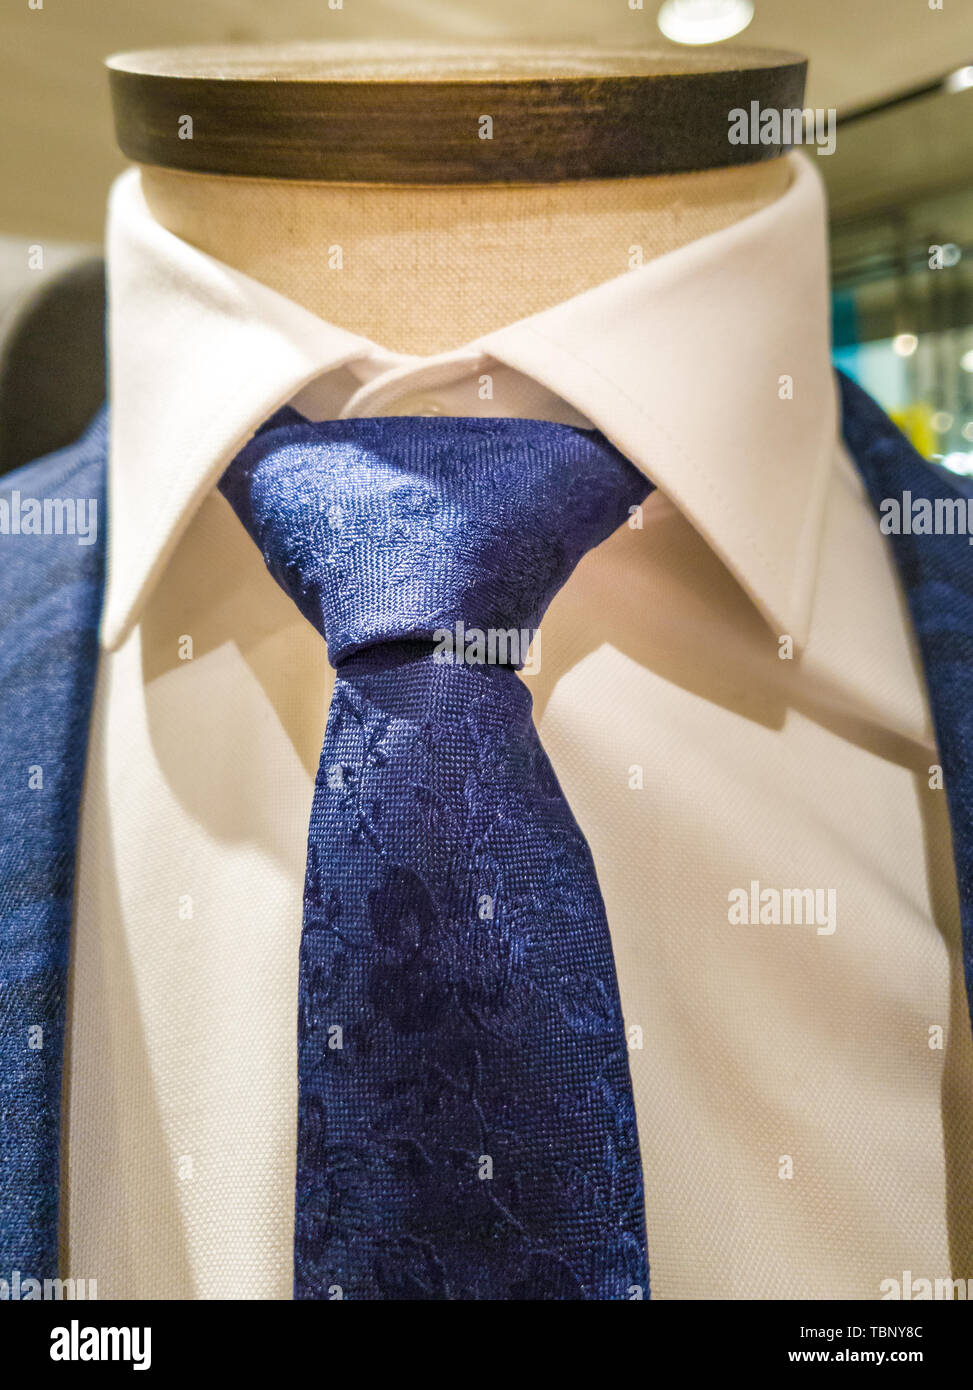 Últimas tendencias en traje, camisa y corbata combinación - Navy traje y corbata - camisa blanca Foto de stock